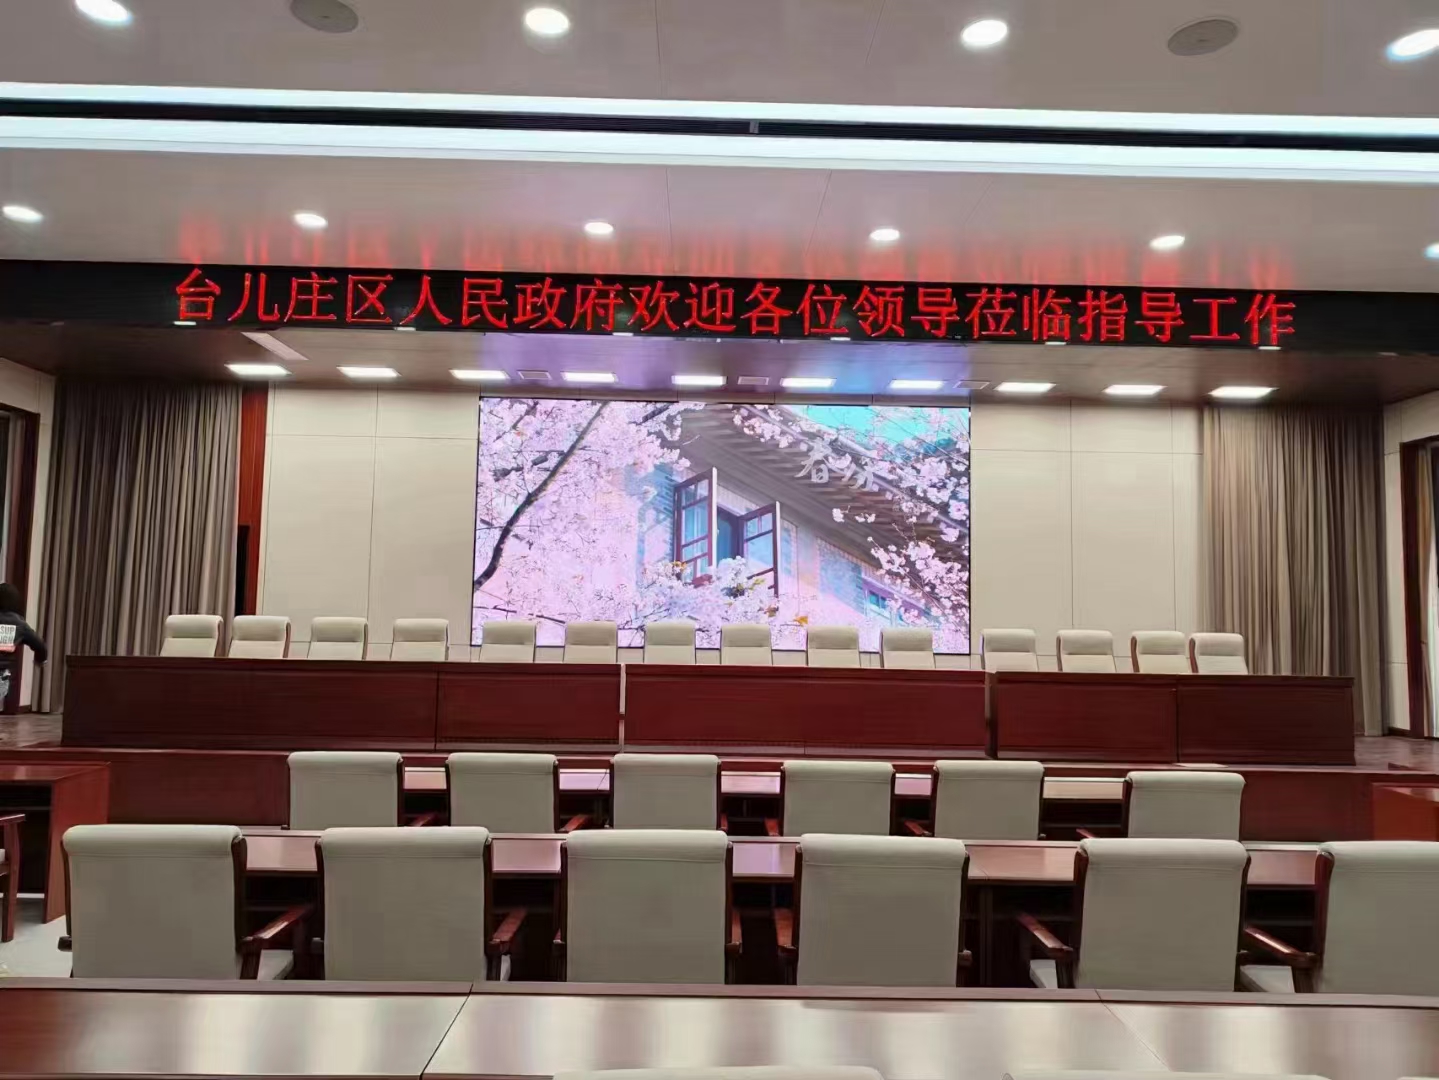 棗莊臺兒莊人民政府室內報告大廳LED全彩顯示大屏幕安裝廠家